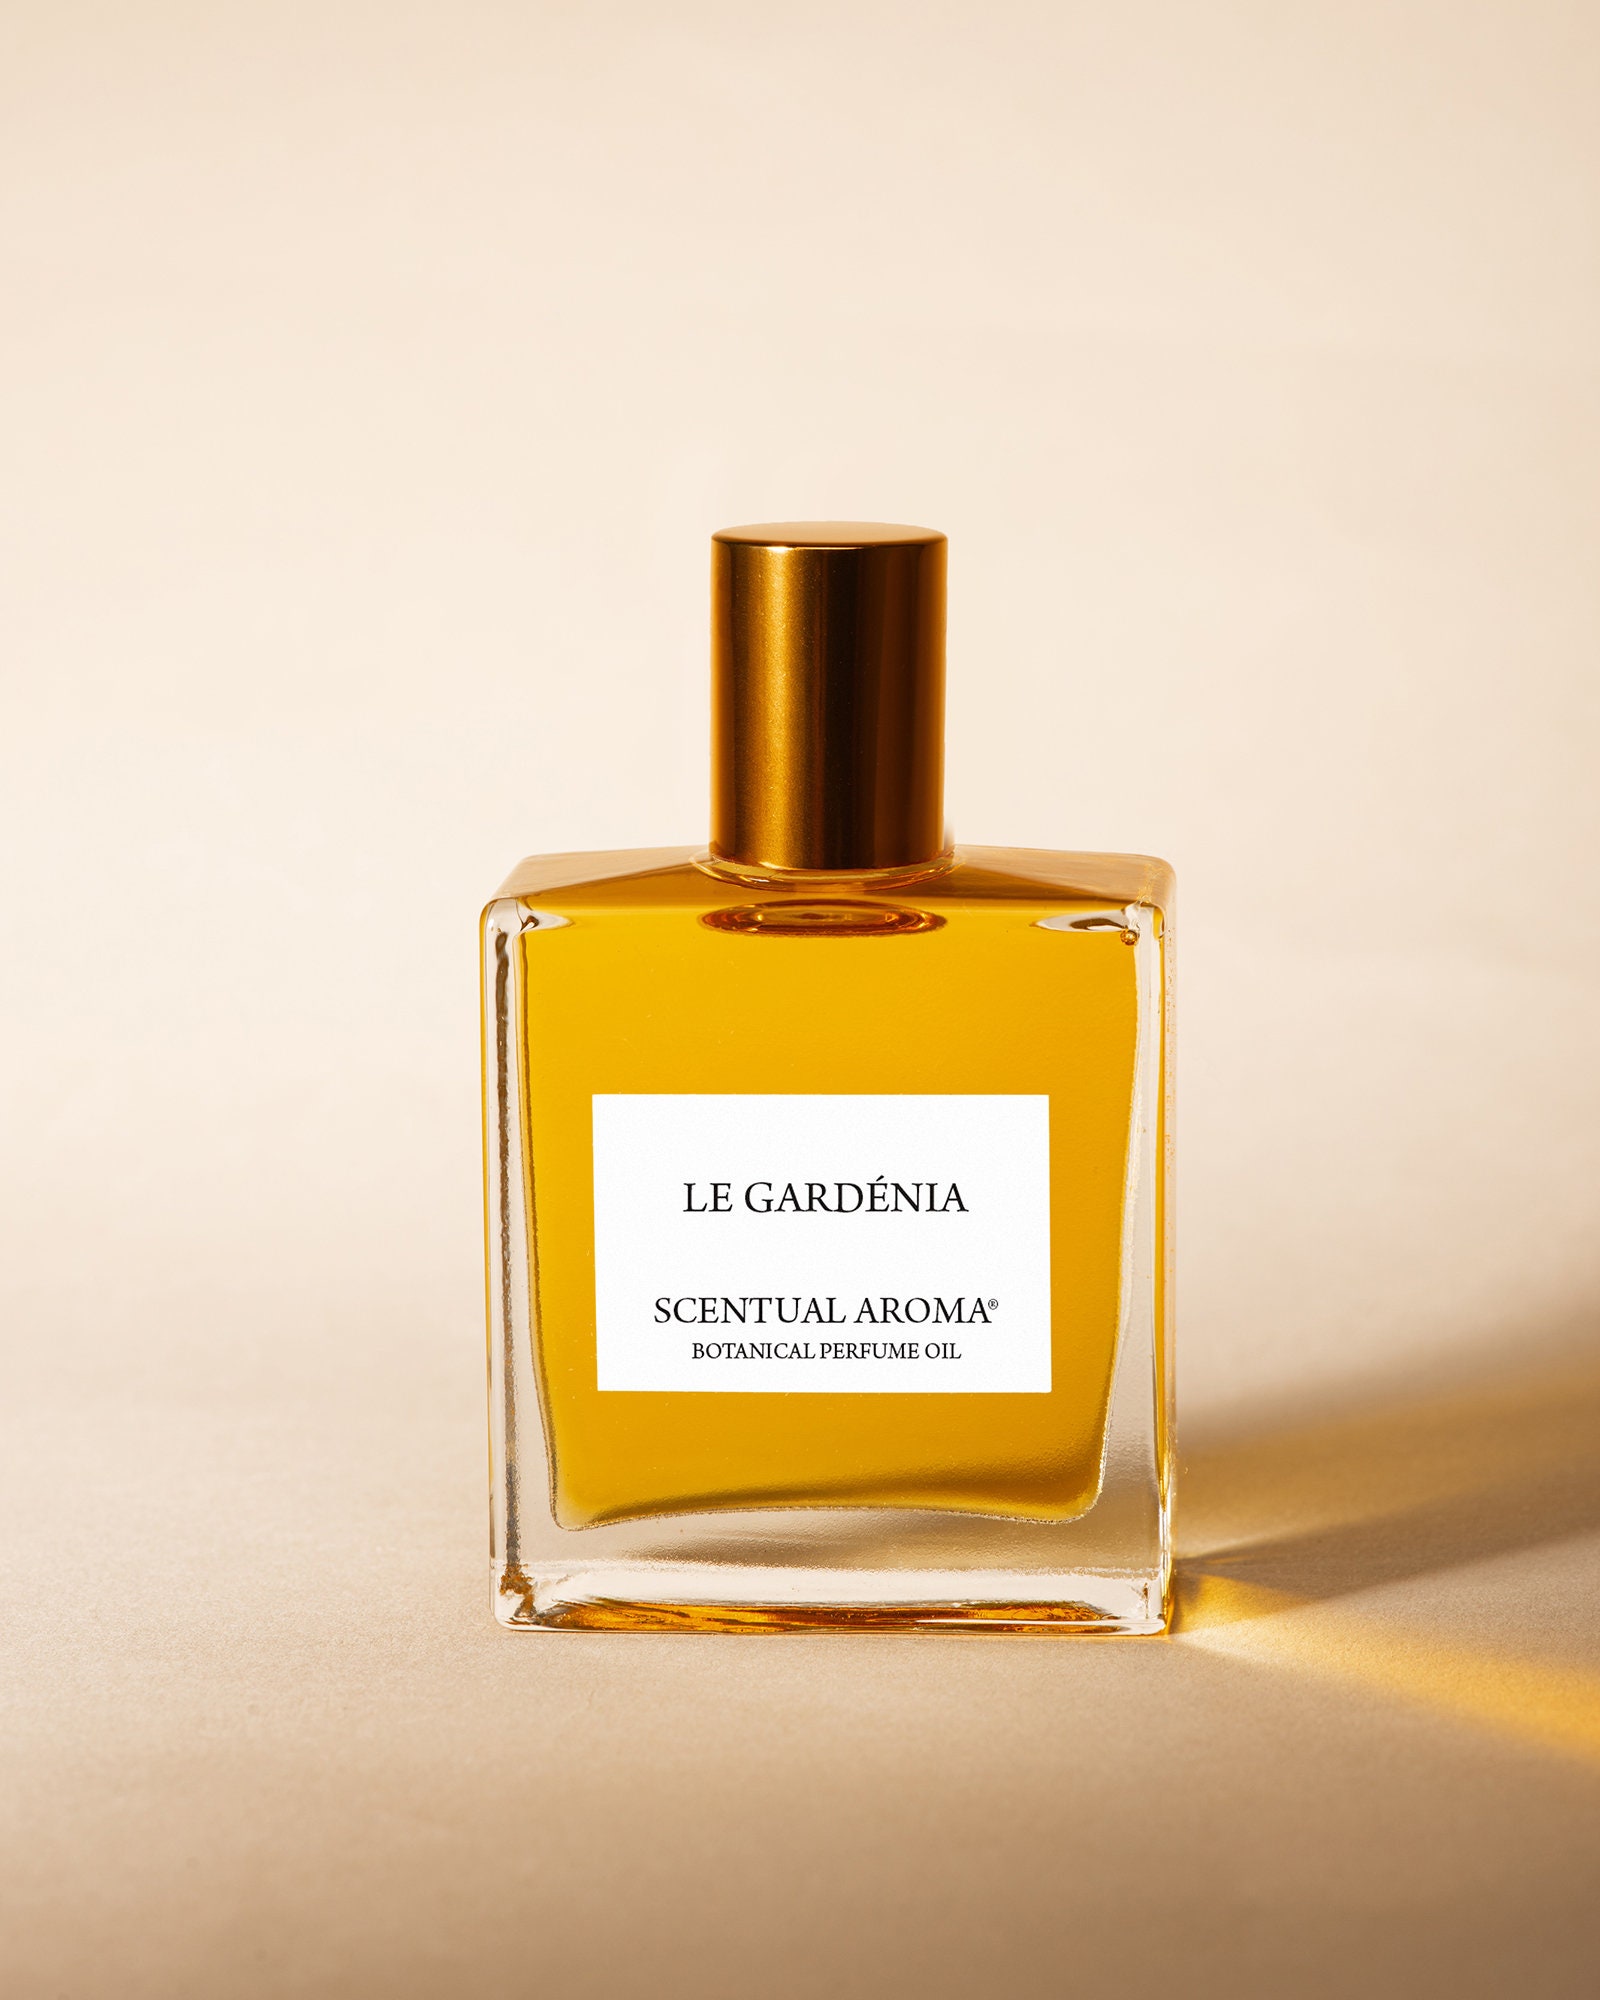 The Elusive Gardenia – The Body Shop English Dawn White Gardenia Perfume  Review – The Candy Perfume Boy